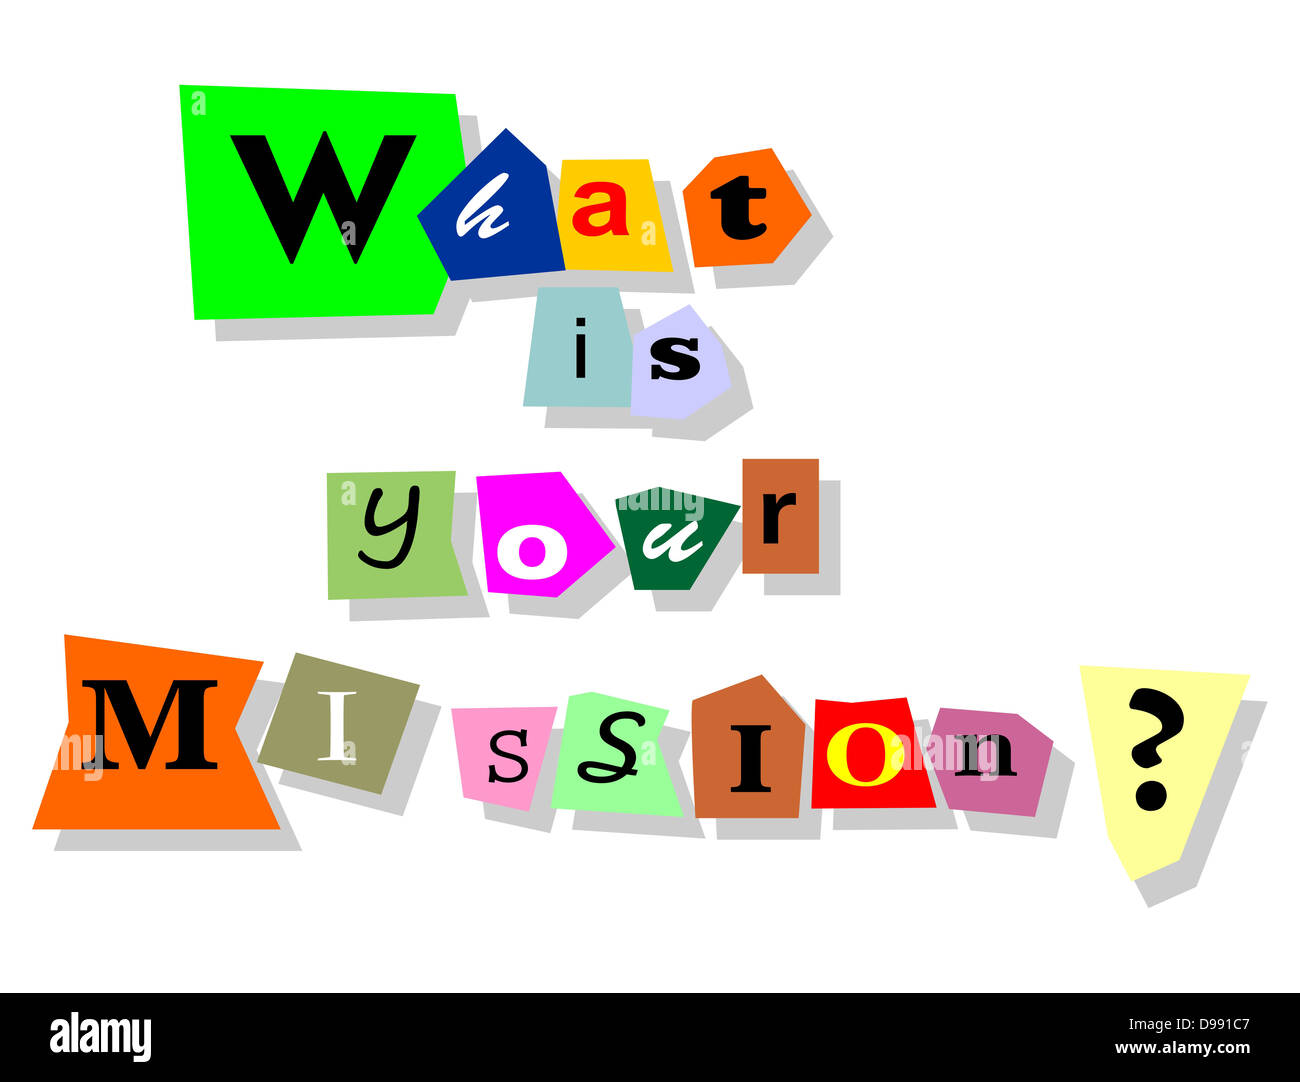 Quelle est votre mission question - collage de texte avec des mots isolés en coupures. Banque D'Images